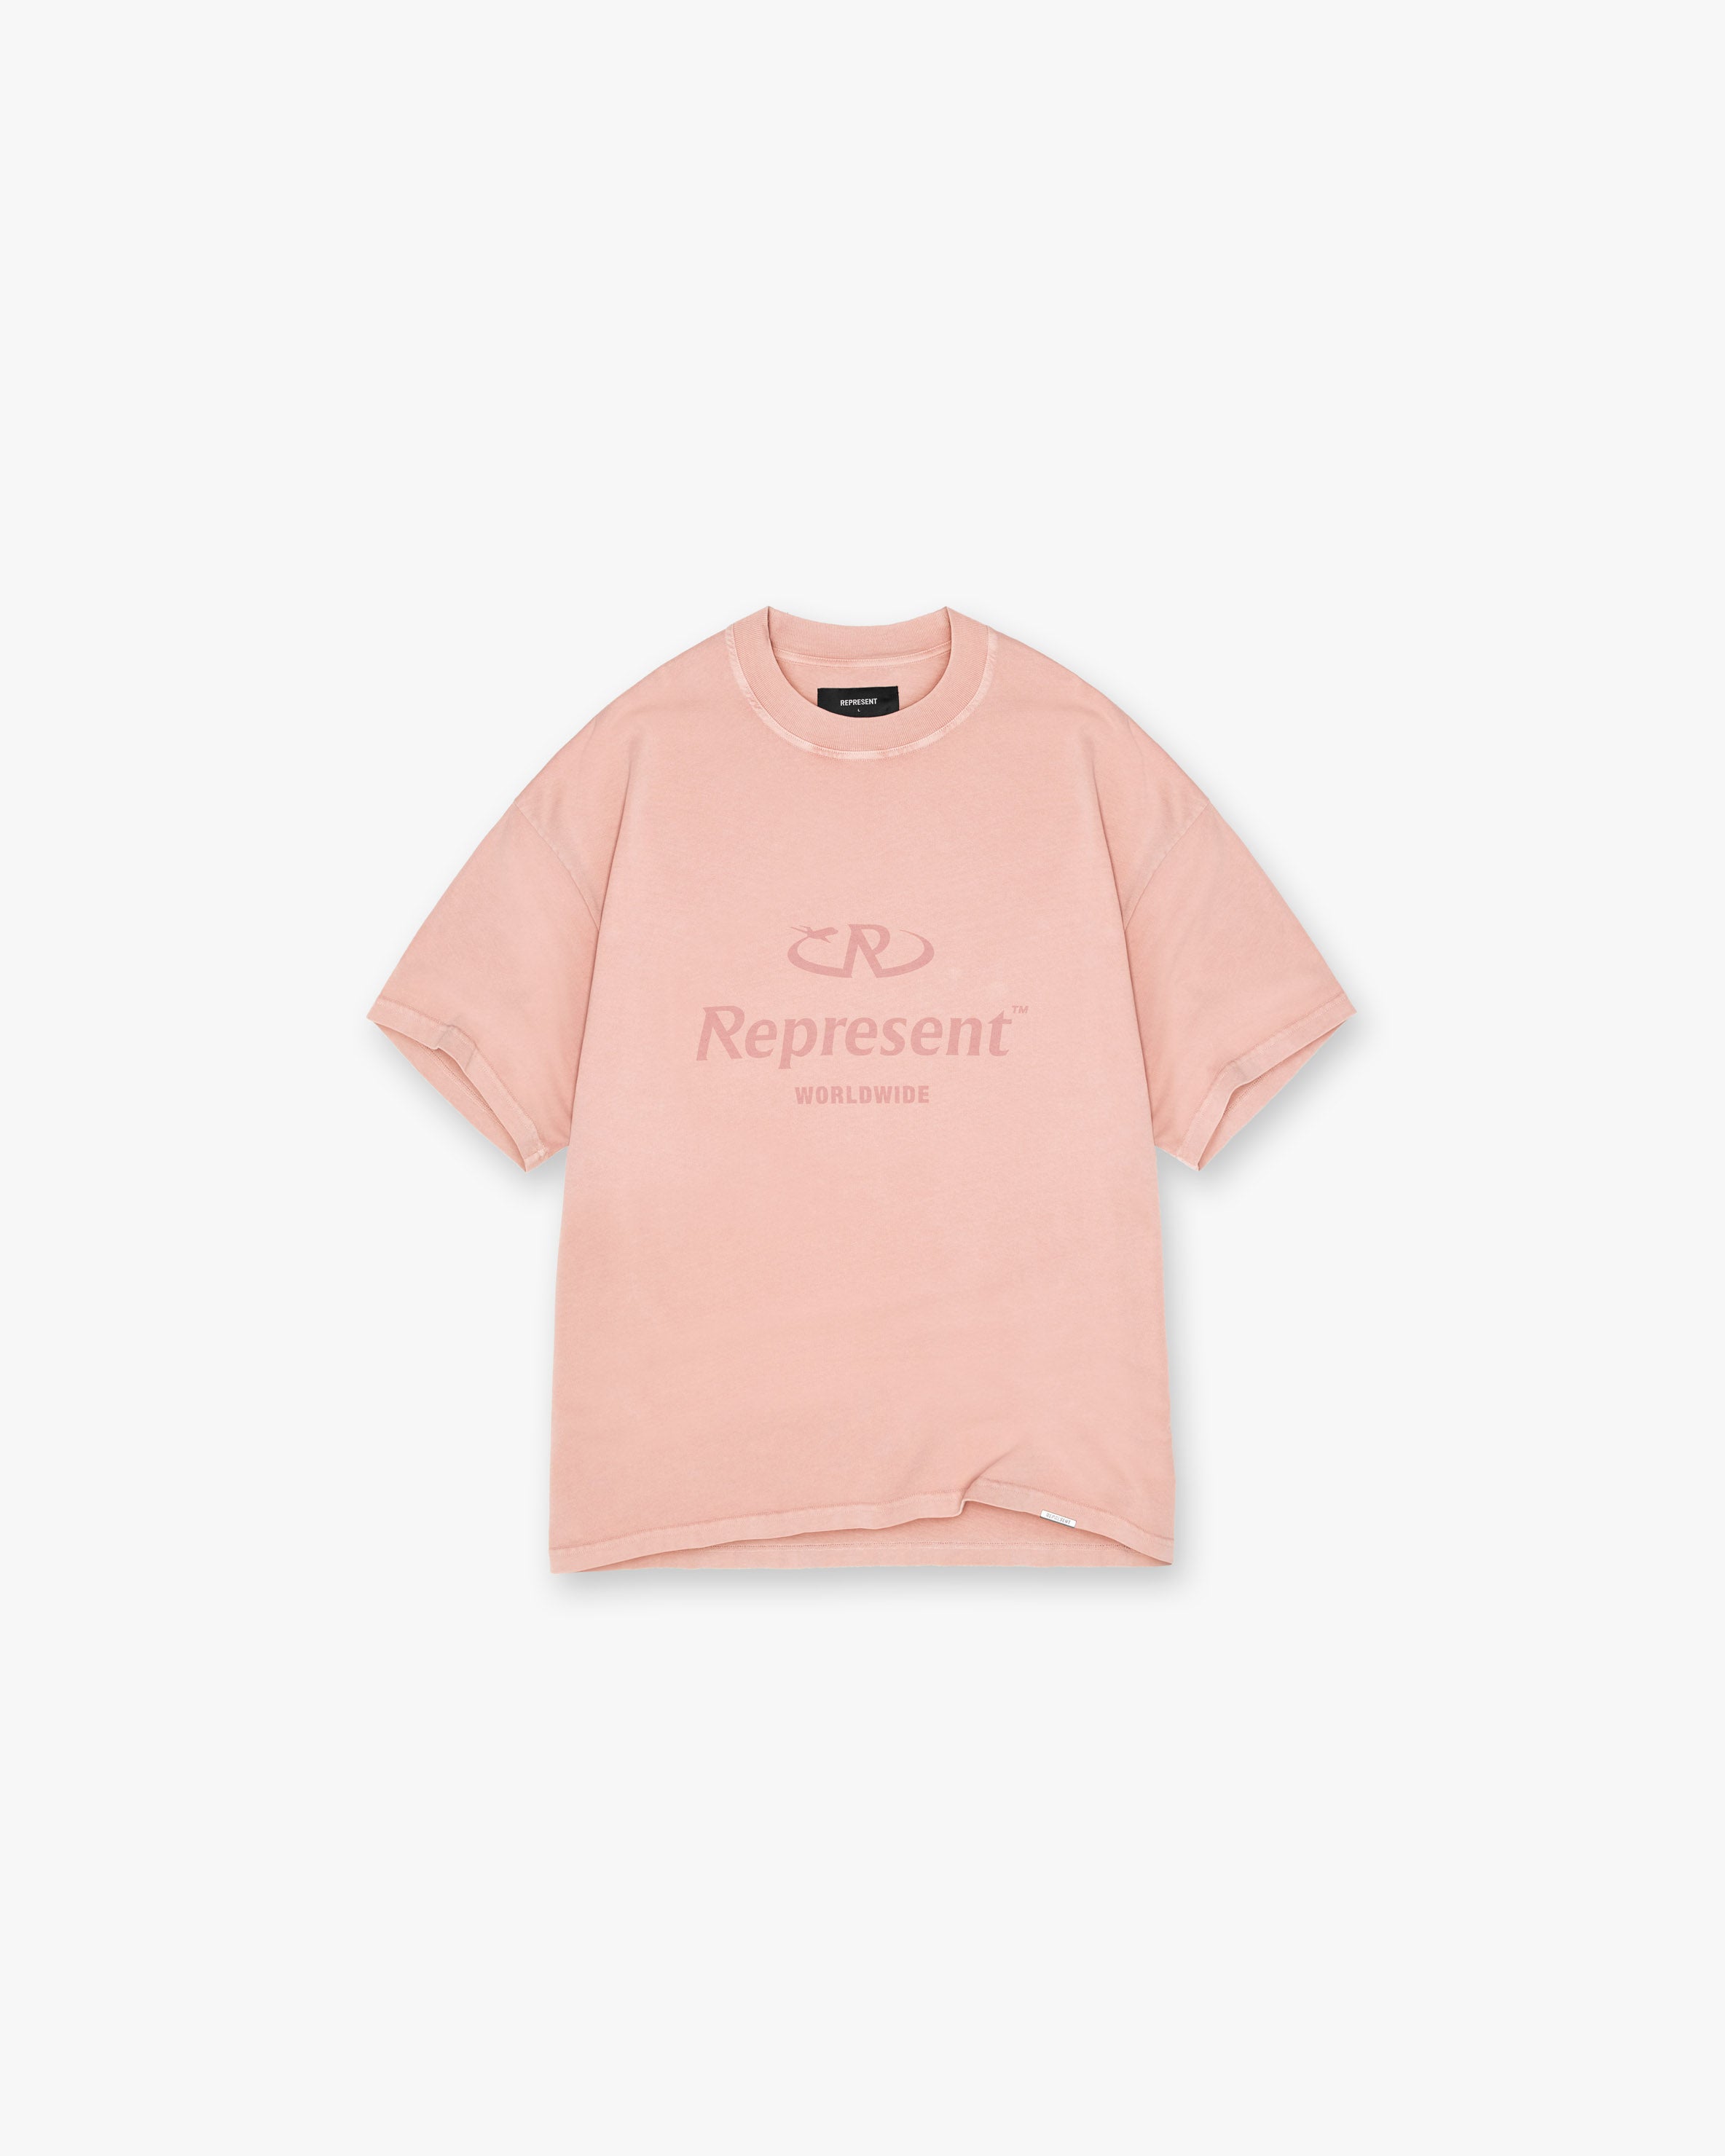 Worldwide T-Shirt | Pink | CLO REPRESENT